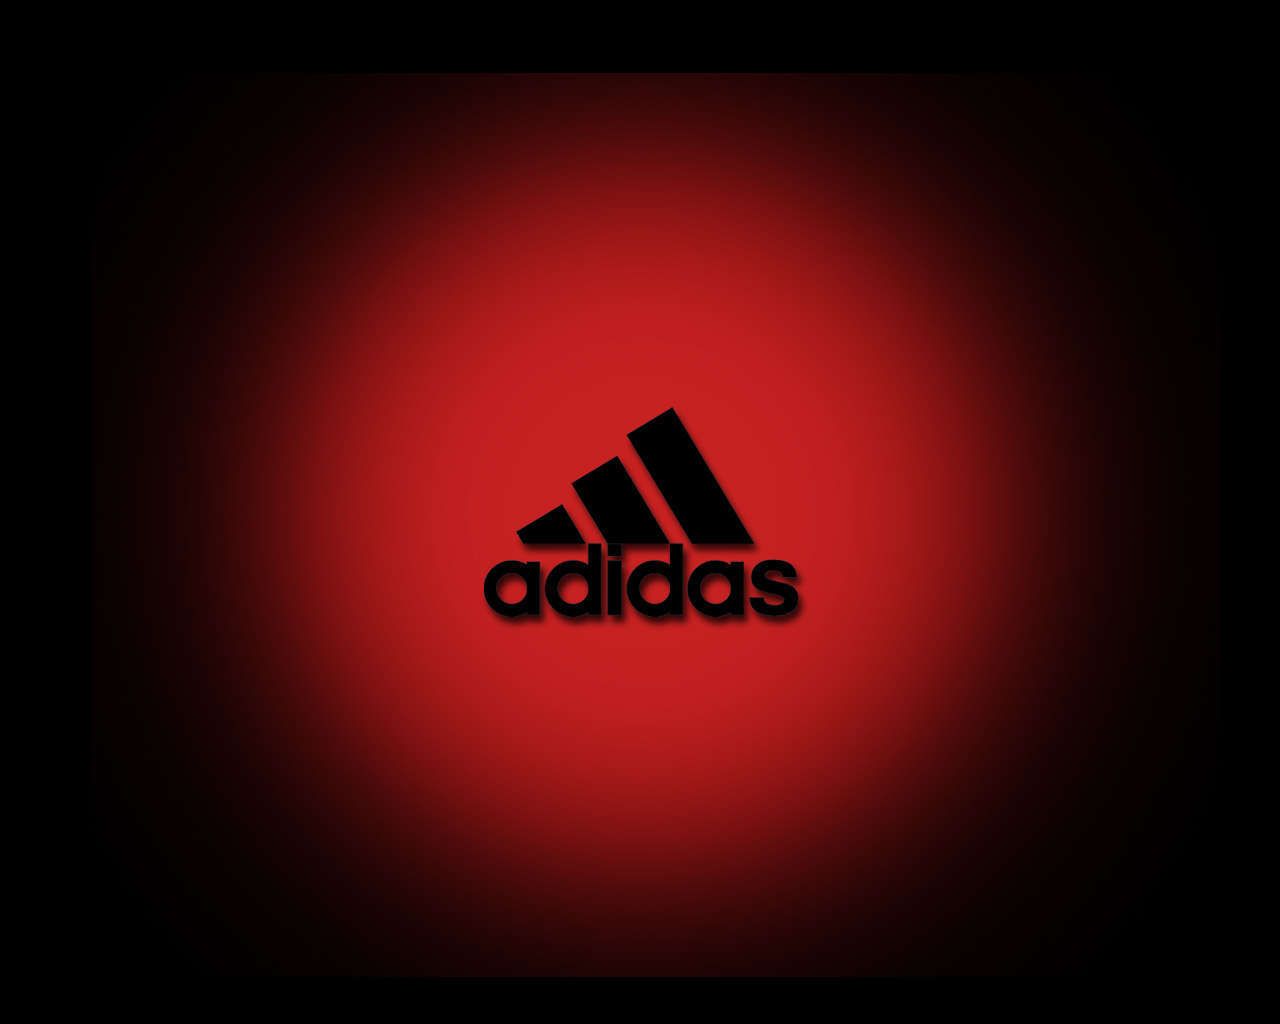 adidas logo with black background